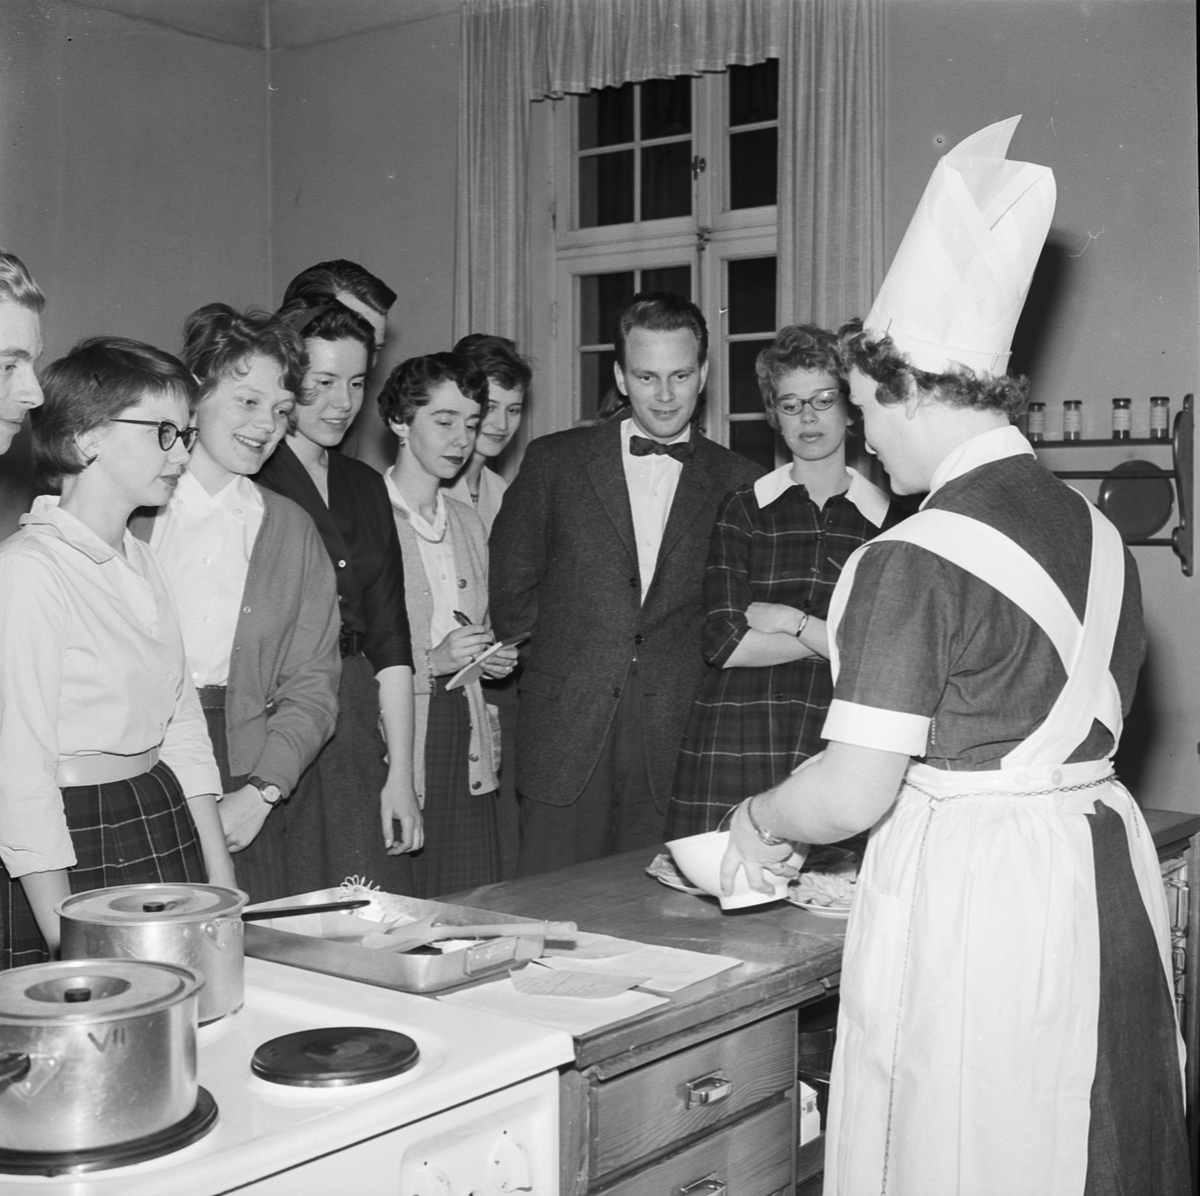 Studentliv, fackskoleelever lär studenter matlagning, Uppsala 1959